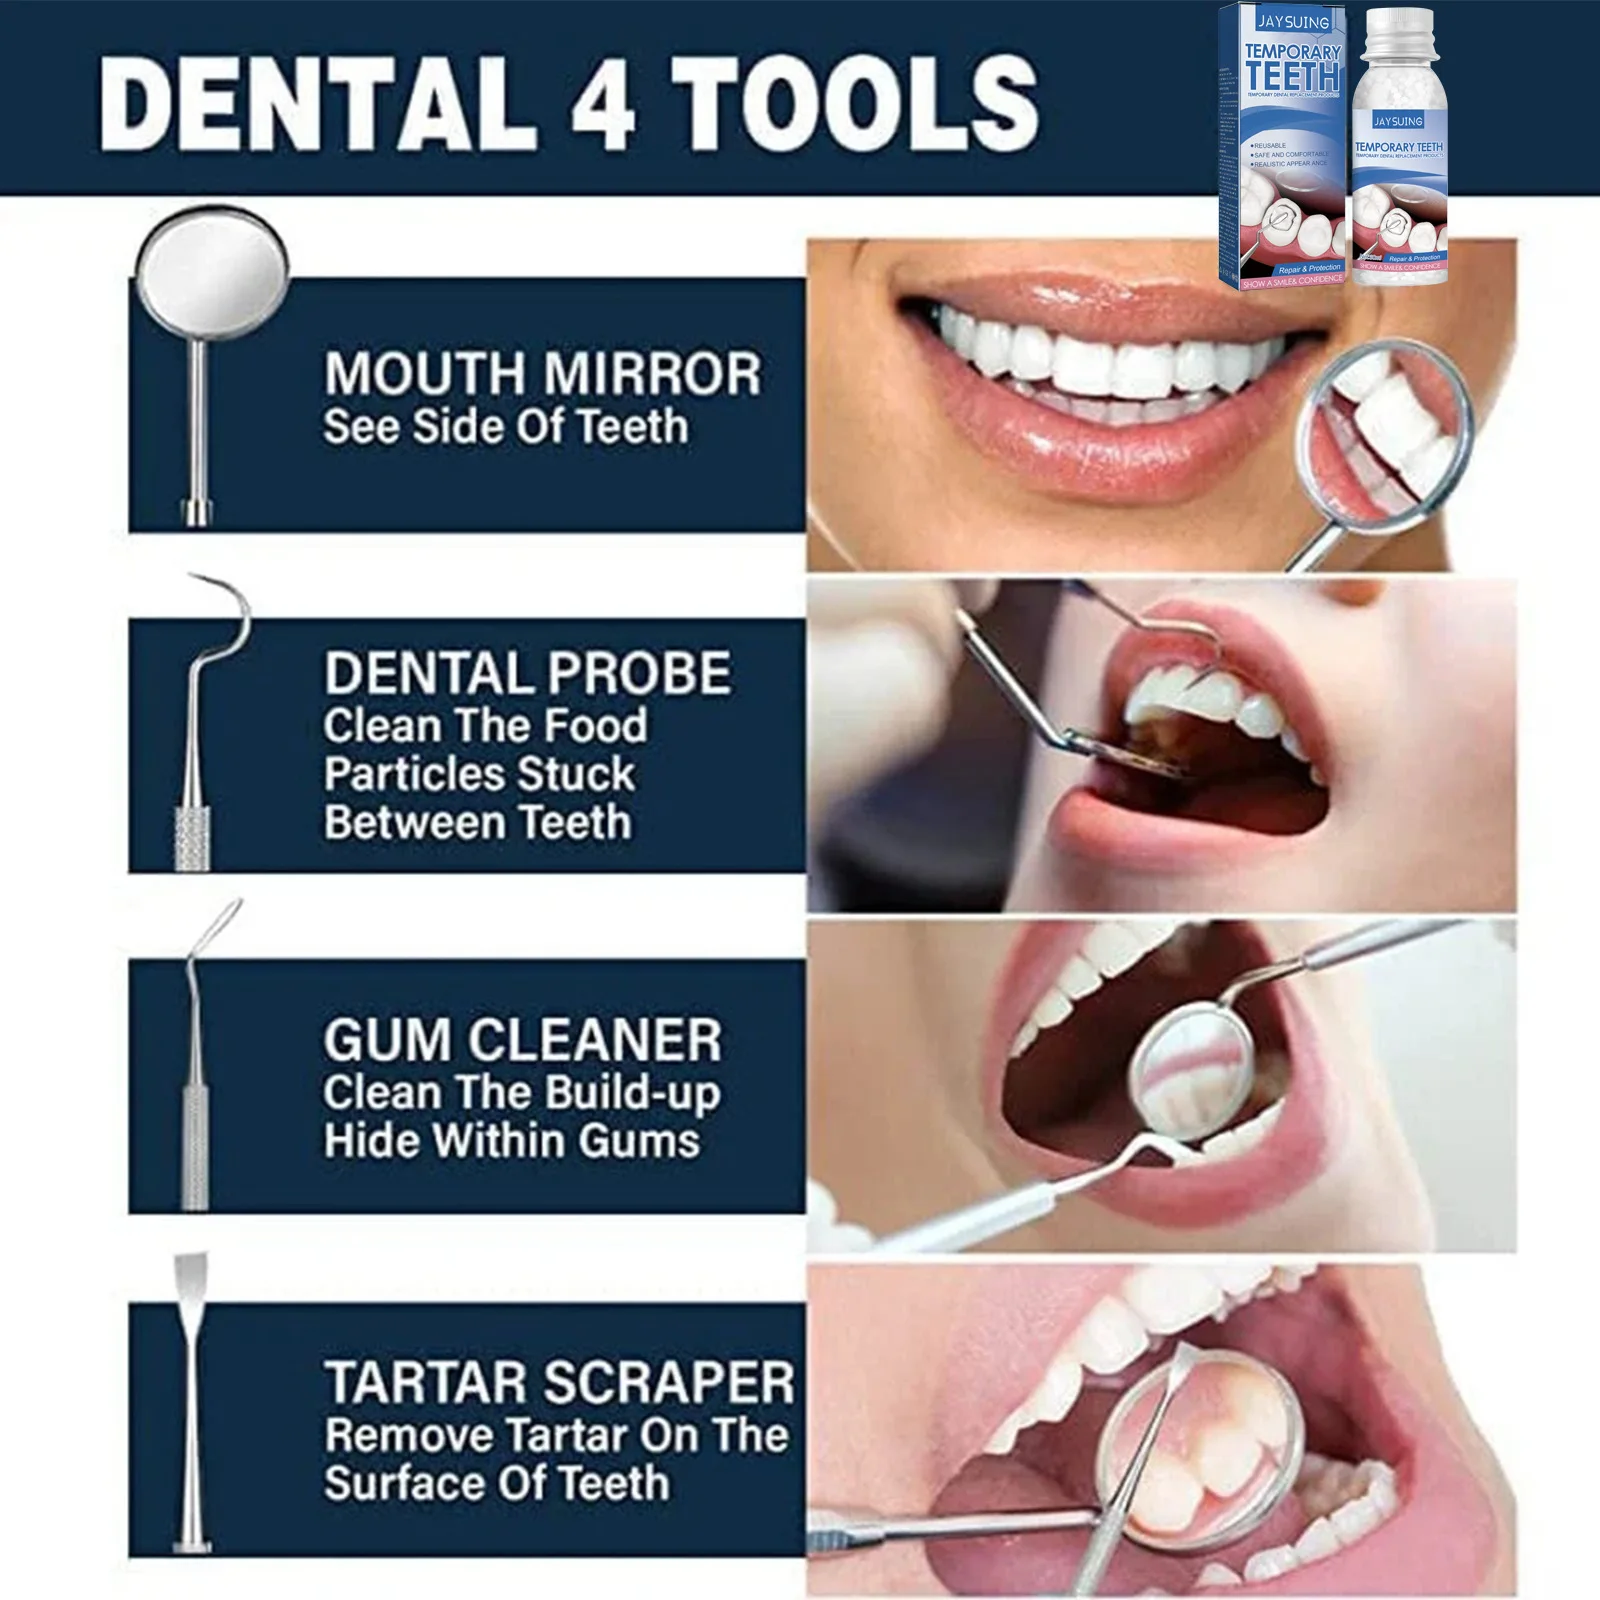 Набор для временного ремонта зубов, клей для зубных протезов, гель для отбеливания зубов, полимер, корректирующие зубы и зазоры, сломанные зубы, сплошной клей